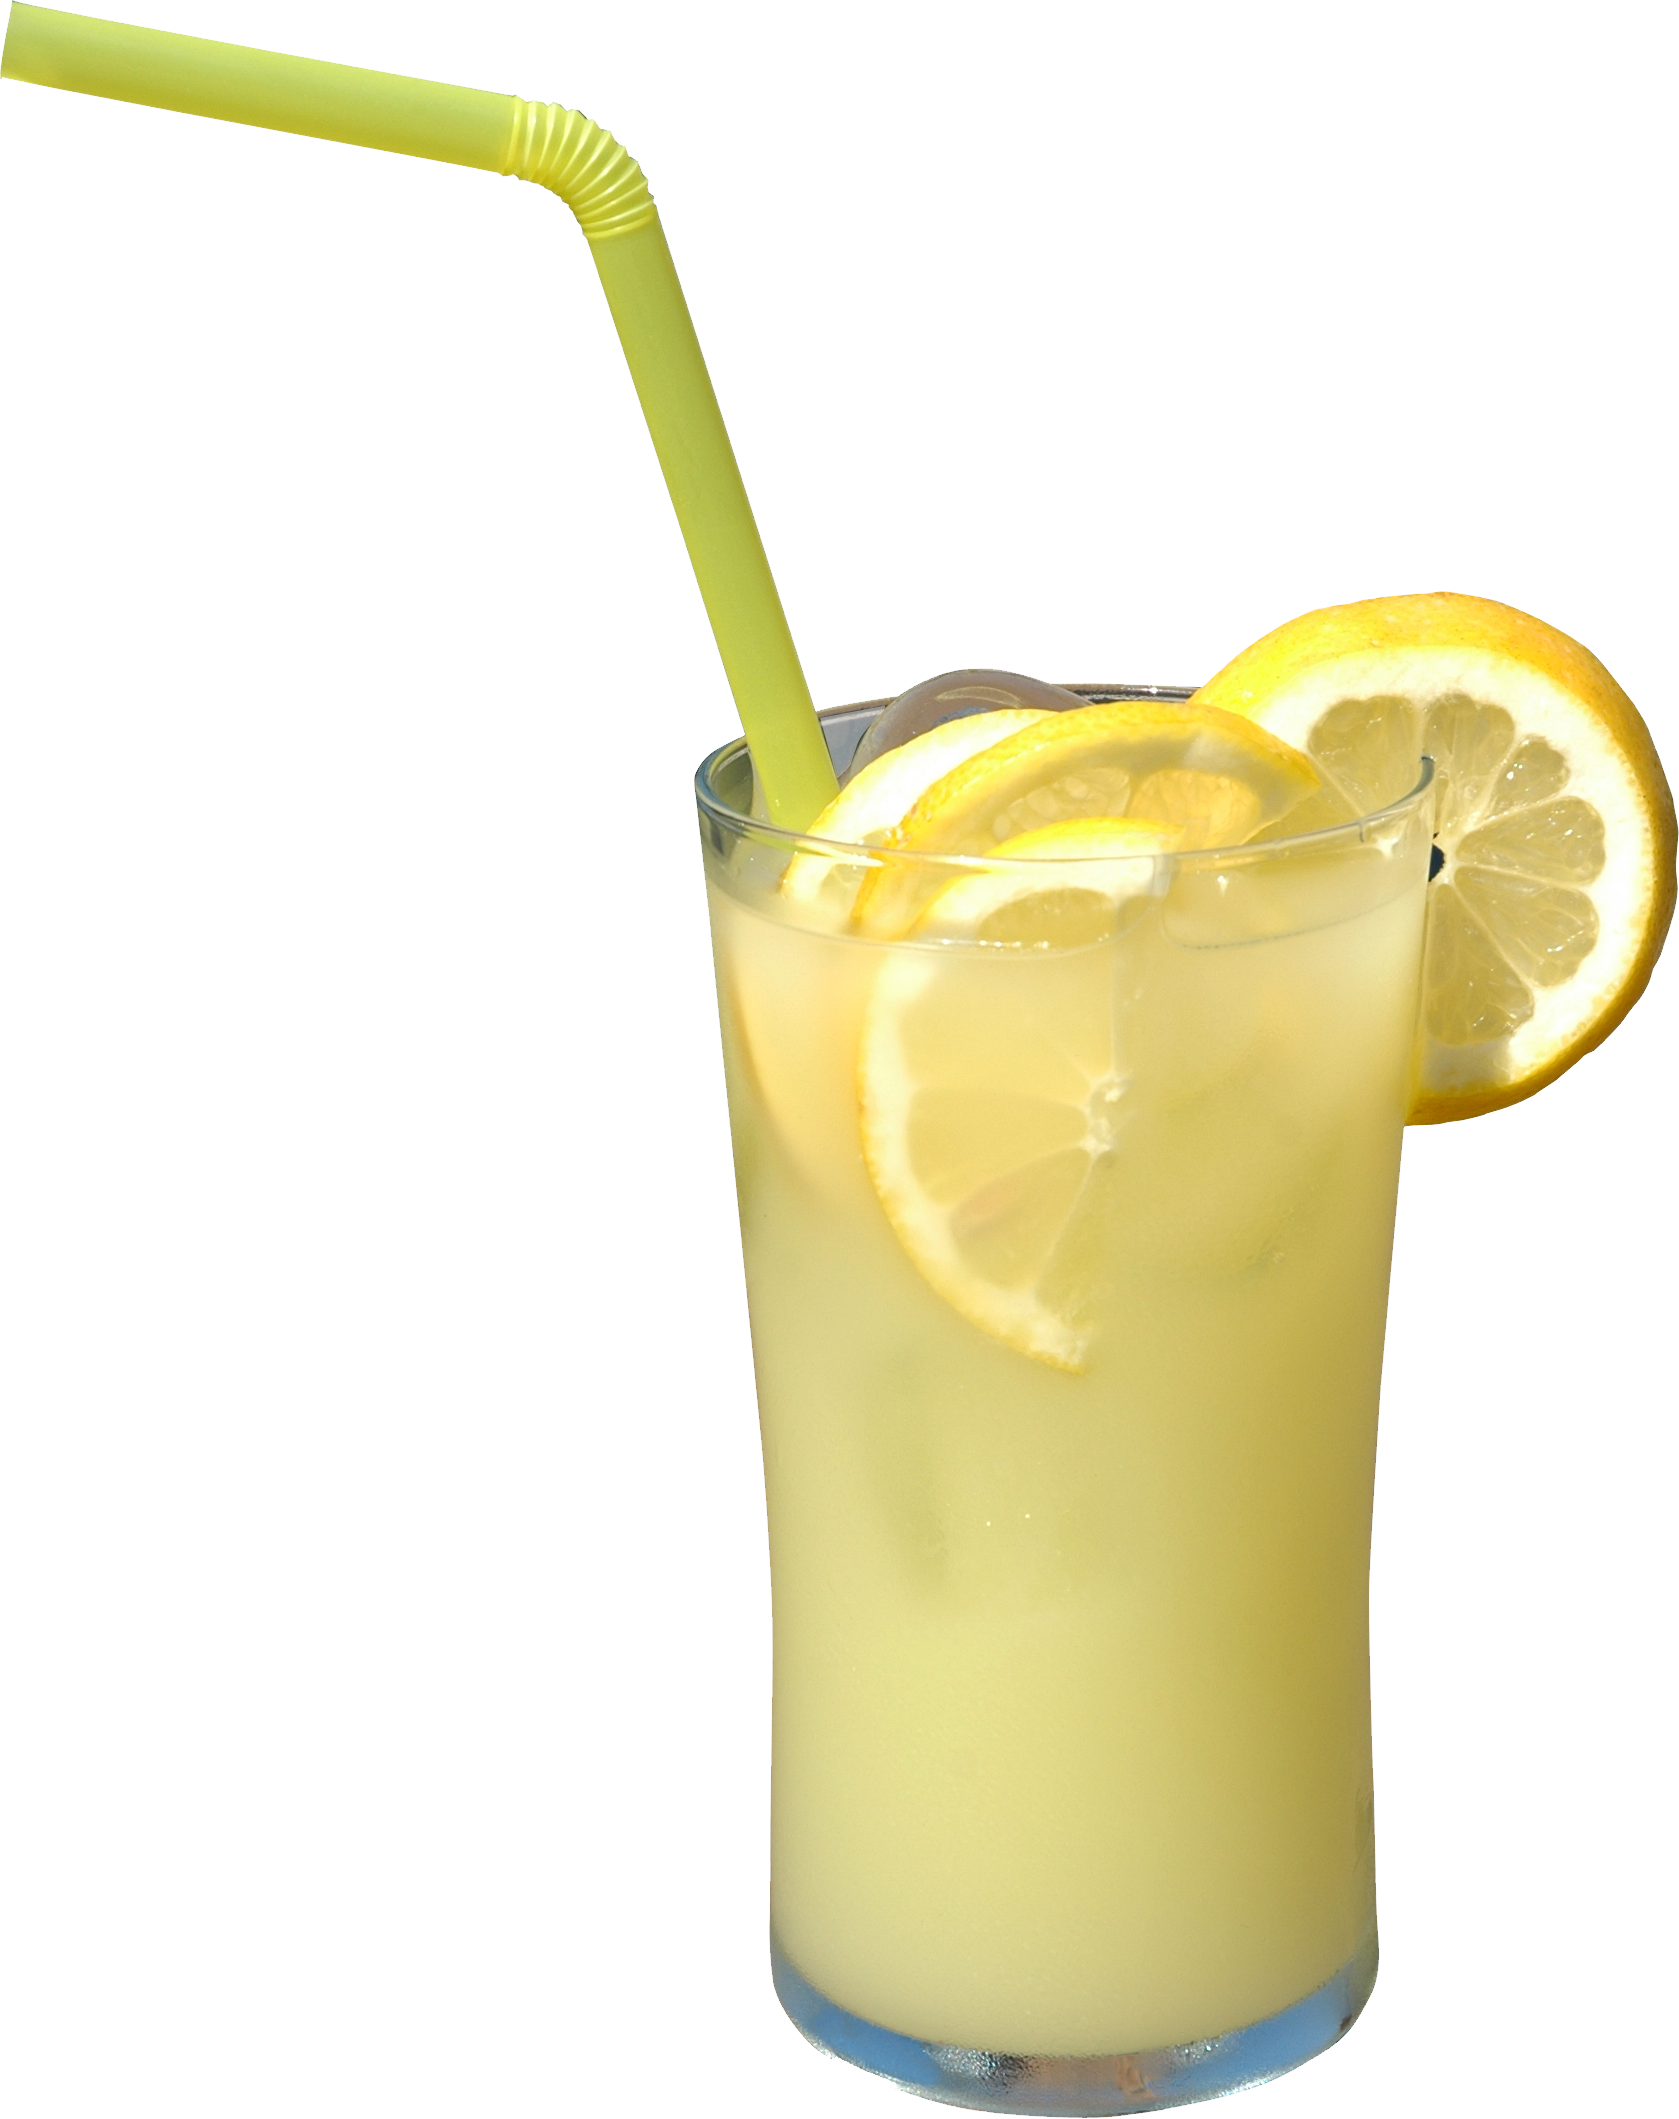 lemon clipart frozen lemonade